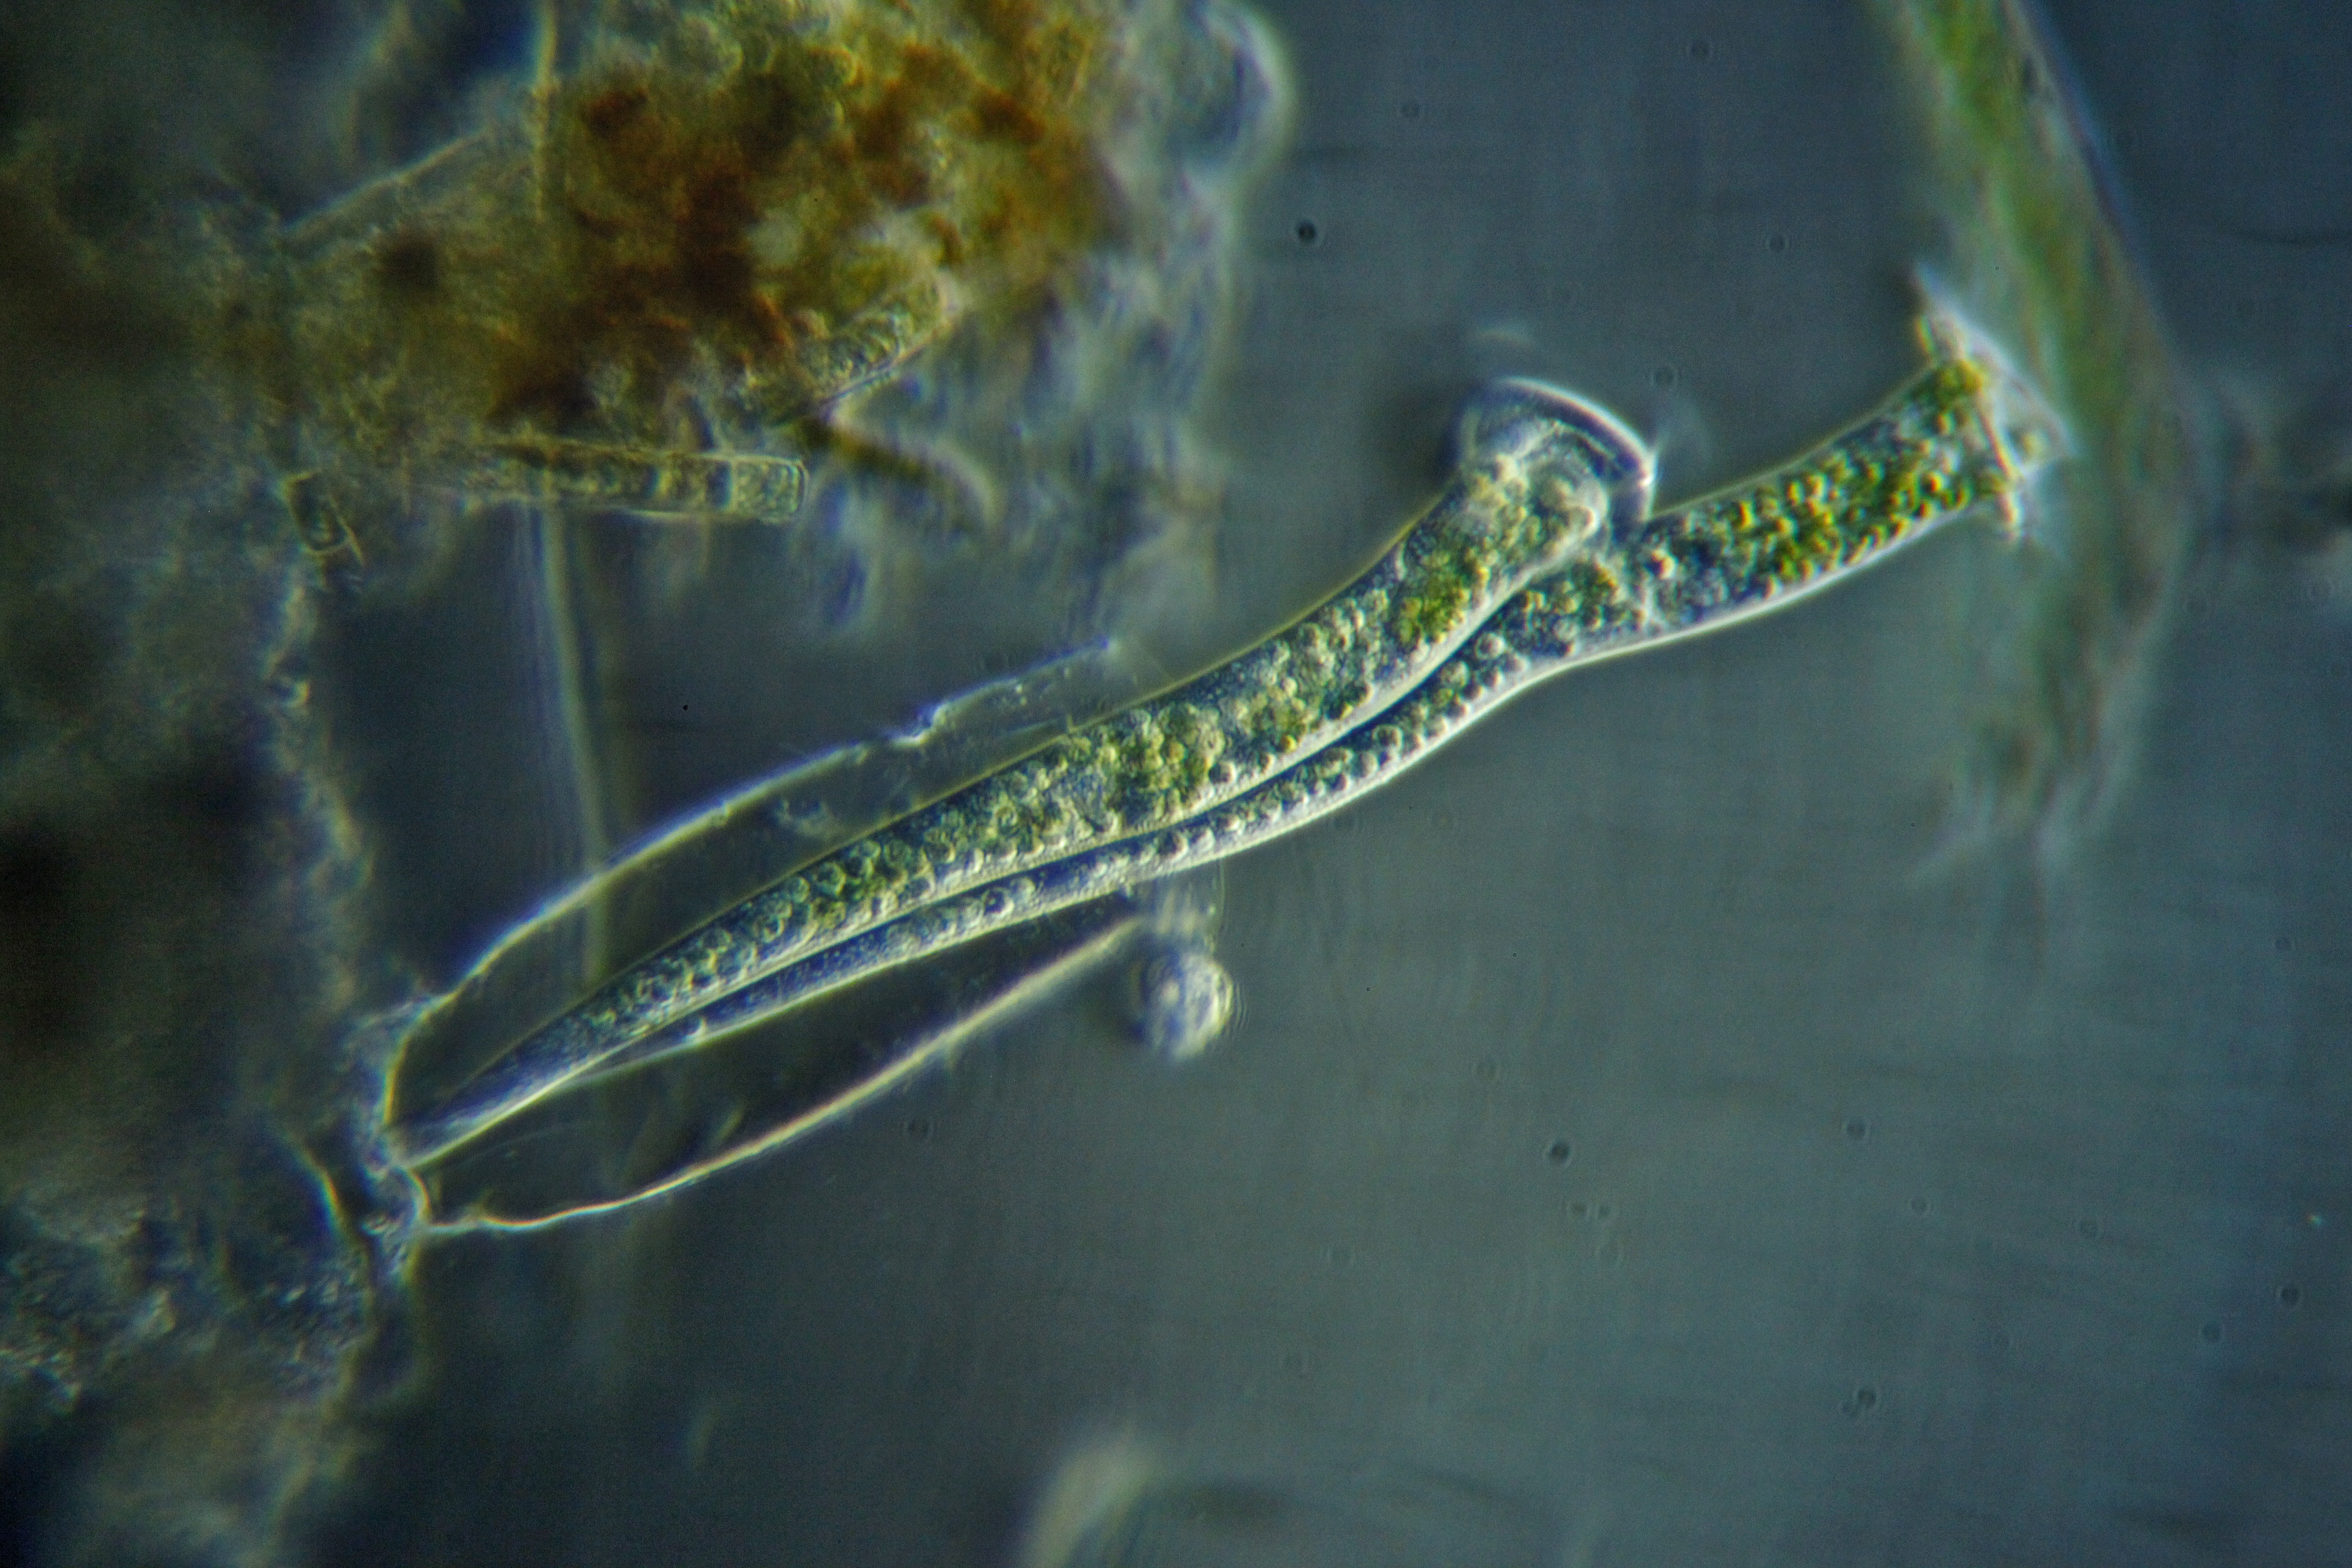 Vaginicola subcrystallina, les frères ciliés